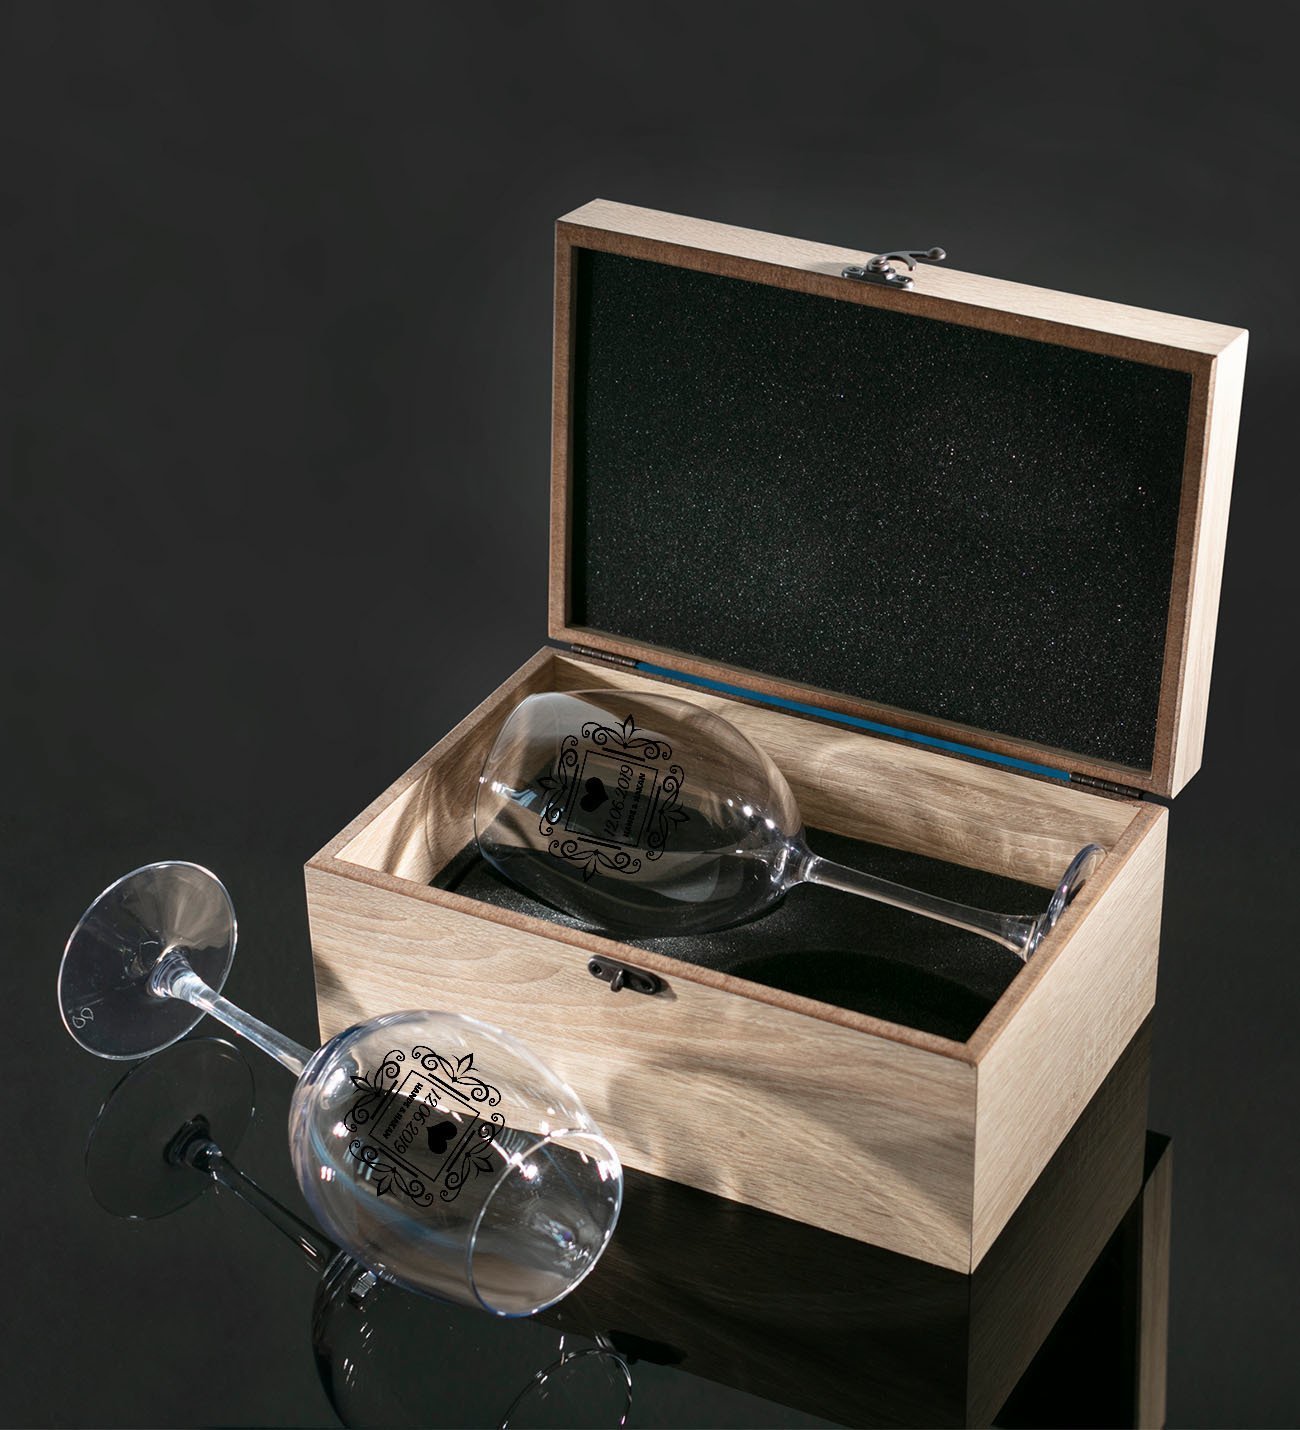 Kişiye Özel Ahşap Kutuda Çift İsimli Tarihli İkili Şarap Kadehi Hediye Seti Model 1